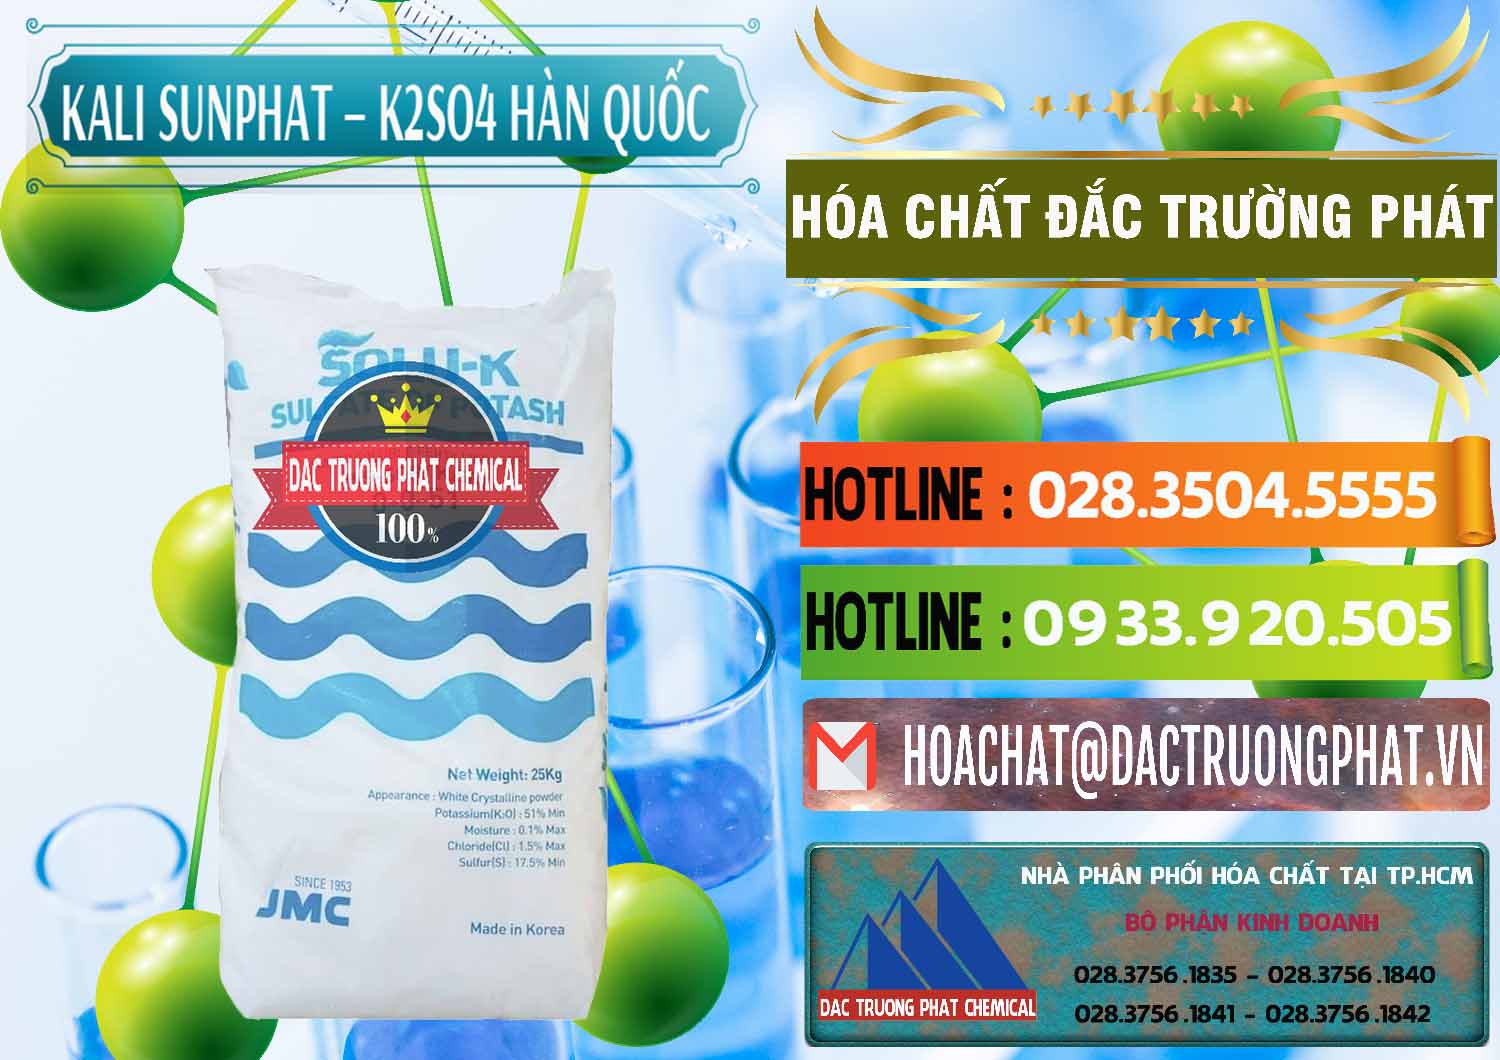 Nơi chuyên kinh doanh & bán Kali Sunphat – K2SO4 Hàn Quốc Korea - 0410 - Cung cấp và phân phối hóa chất tại TP.HCM - cungcaphoachat.com.vn